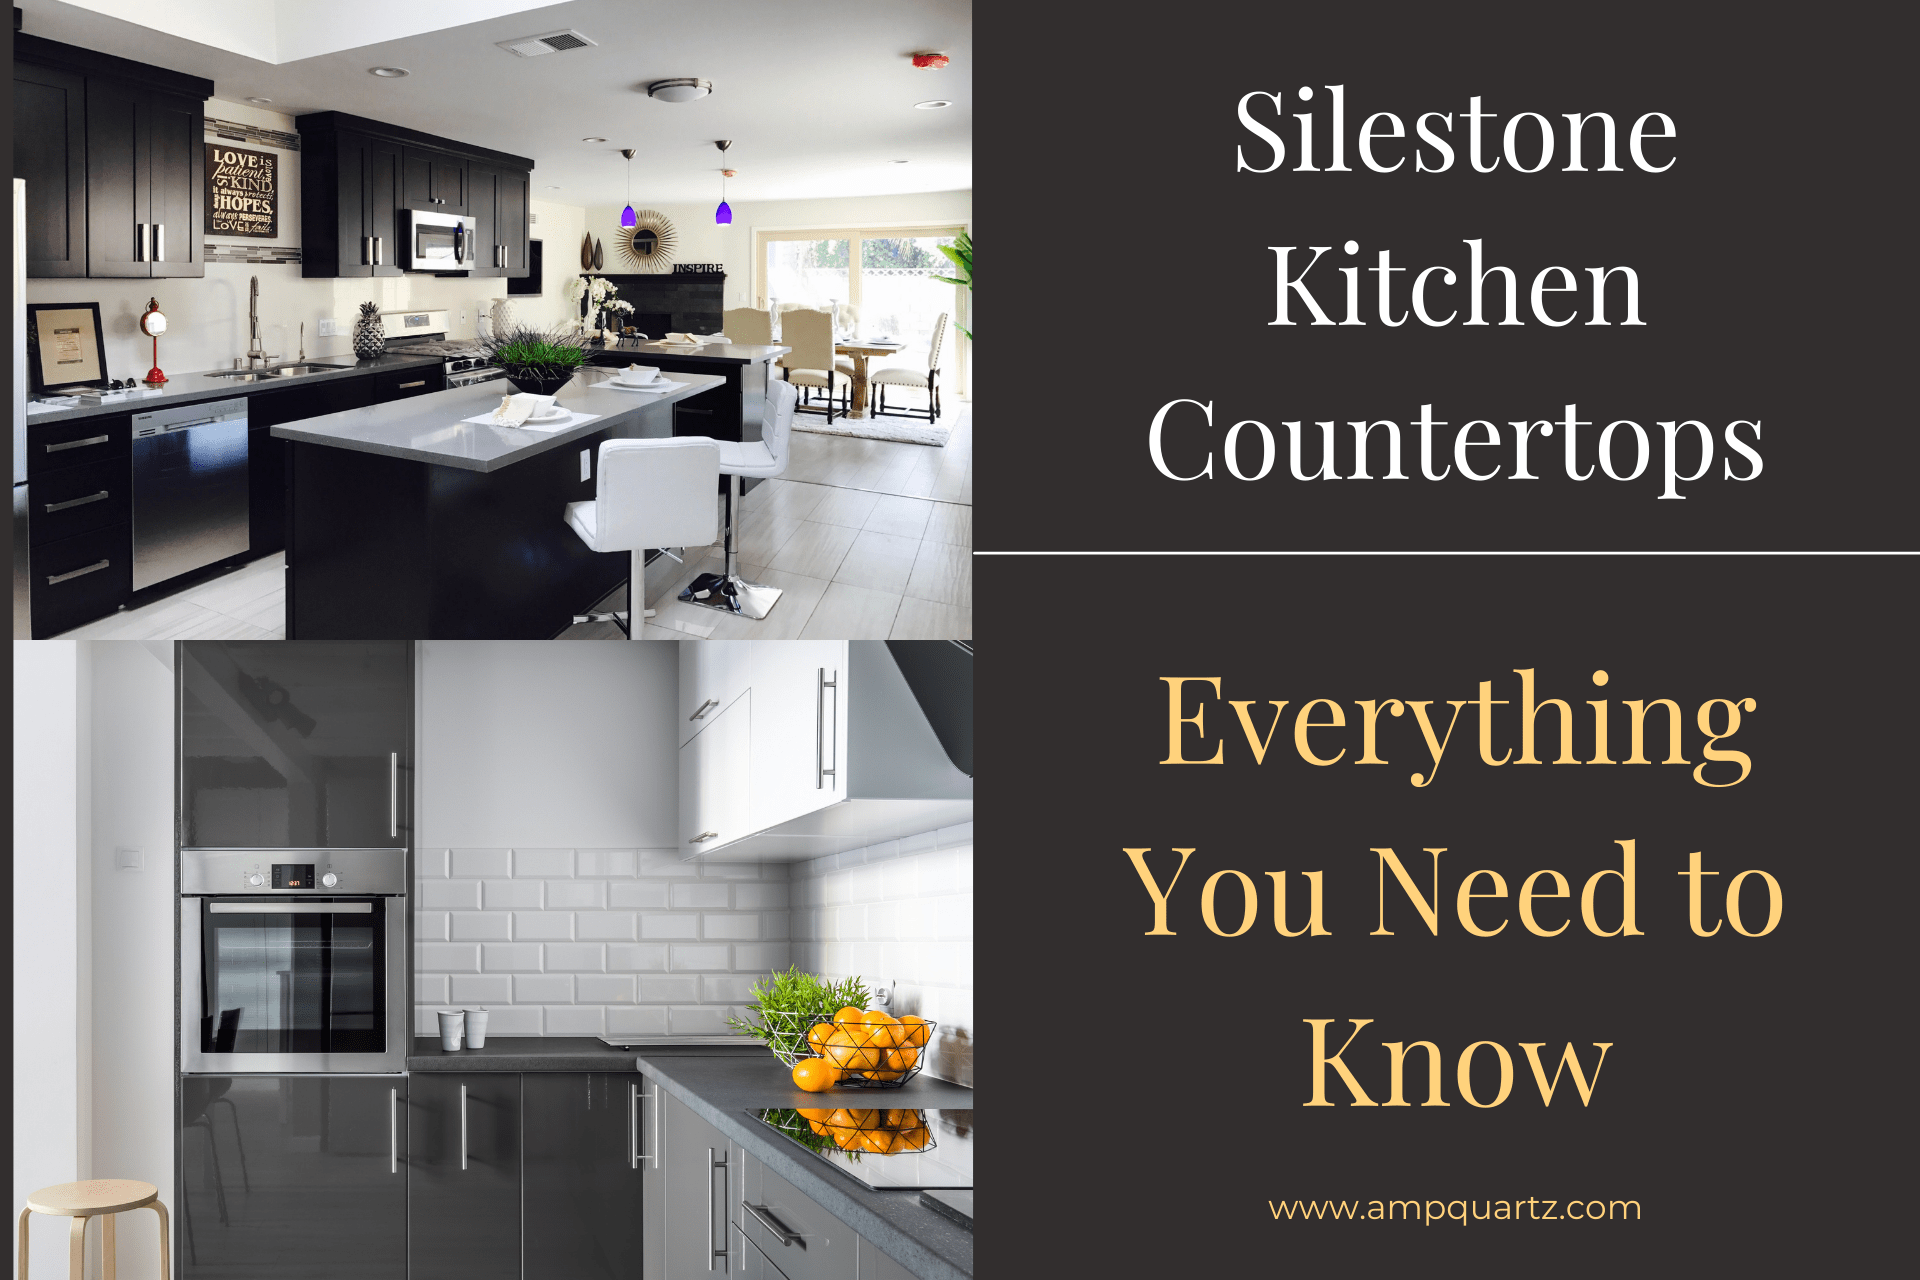 Silestone Kitchen Countertops